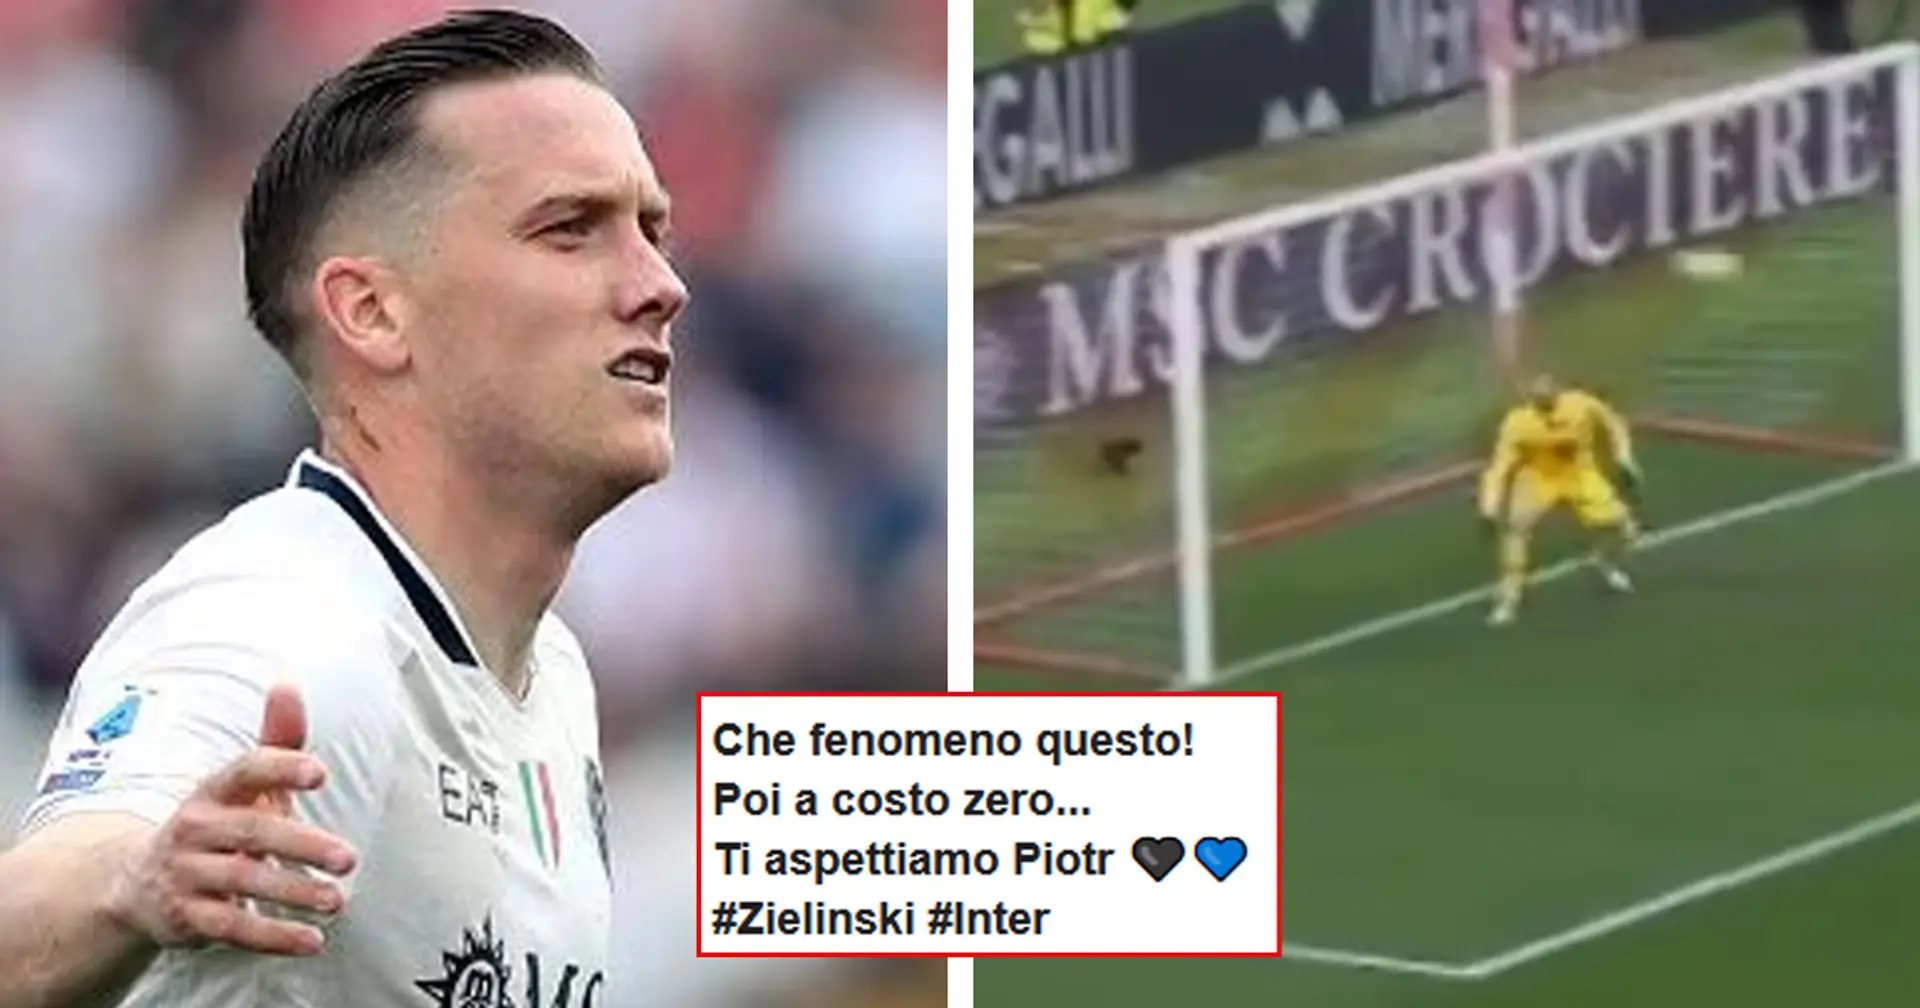 Zielinski torna al gol dopo 4 mesi con una perla! Tifosi dell'Inter in estasi: "Ti aspetto a braccia aperte"